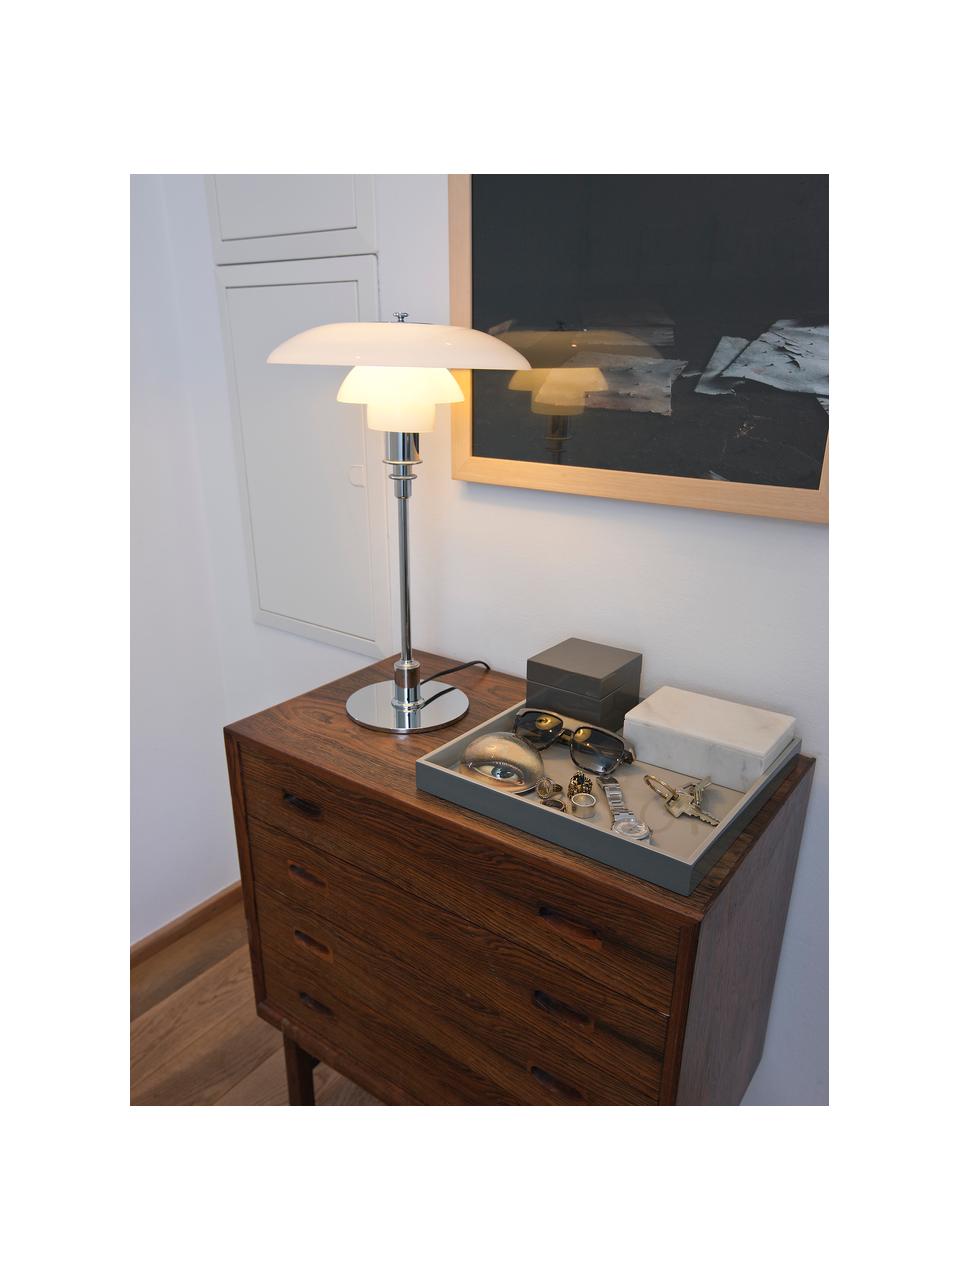 Velká stolní lampa PH 3/2, ručně foukaná, Stříbrná, bílá, Ø 29 cm, V 47 cm